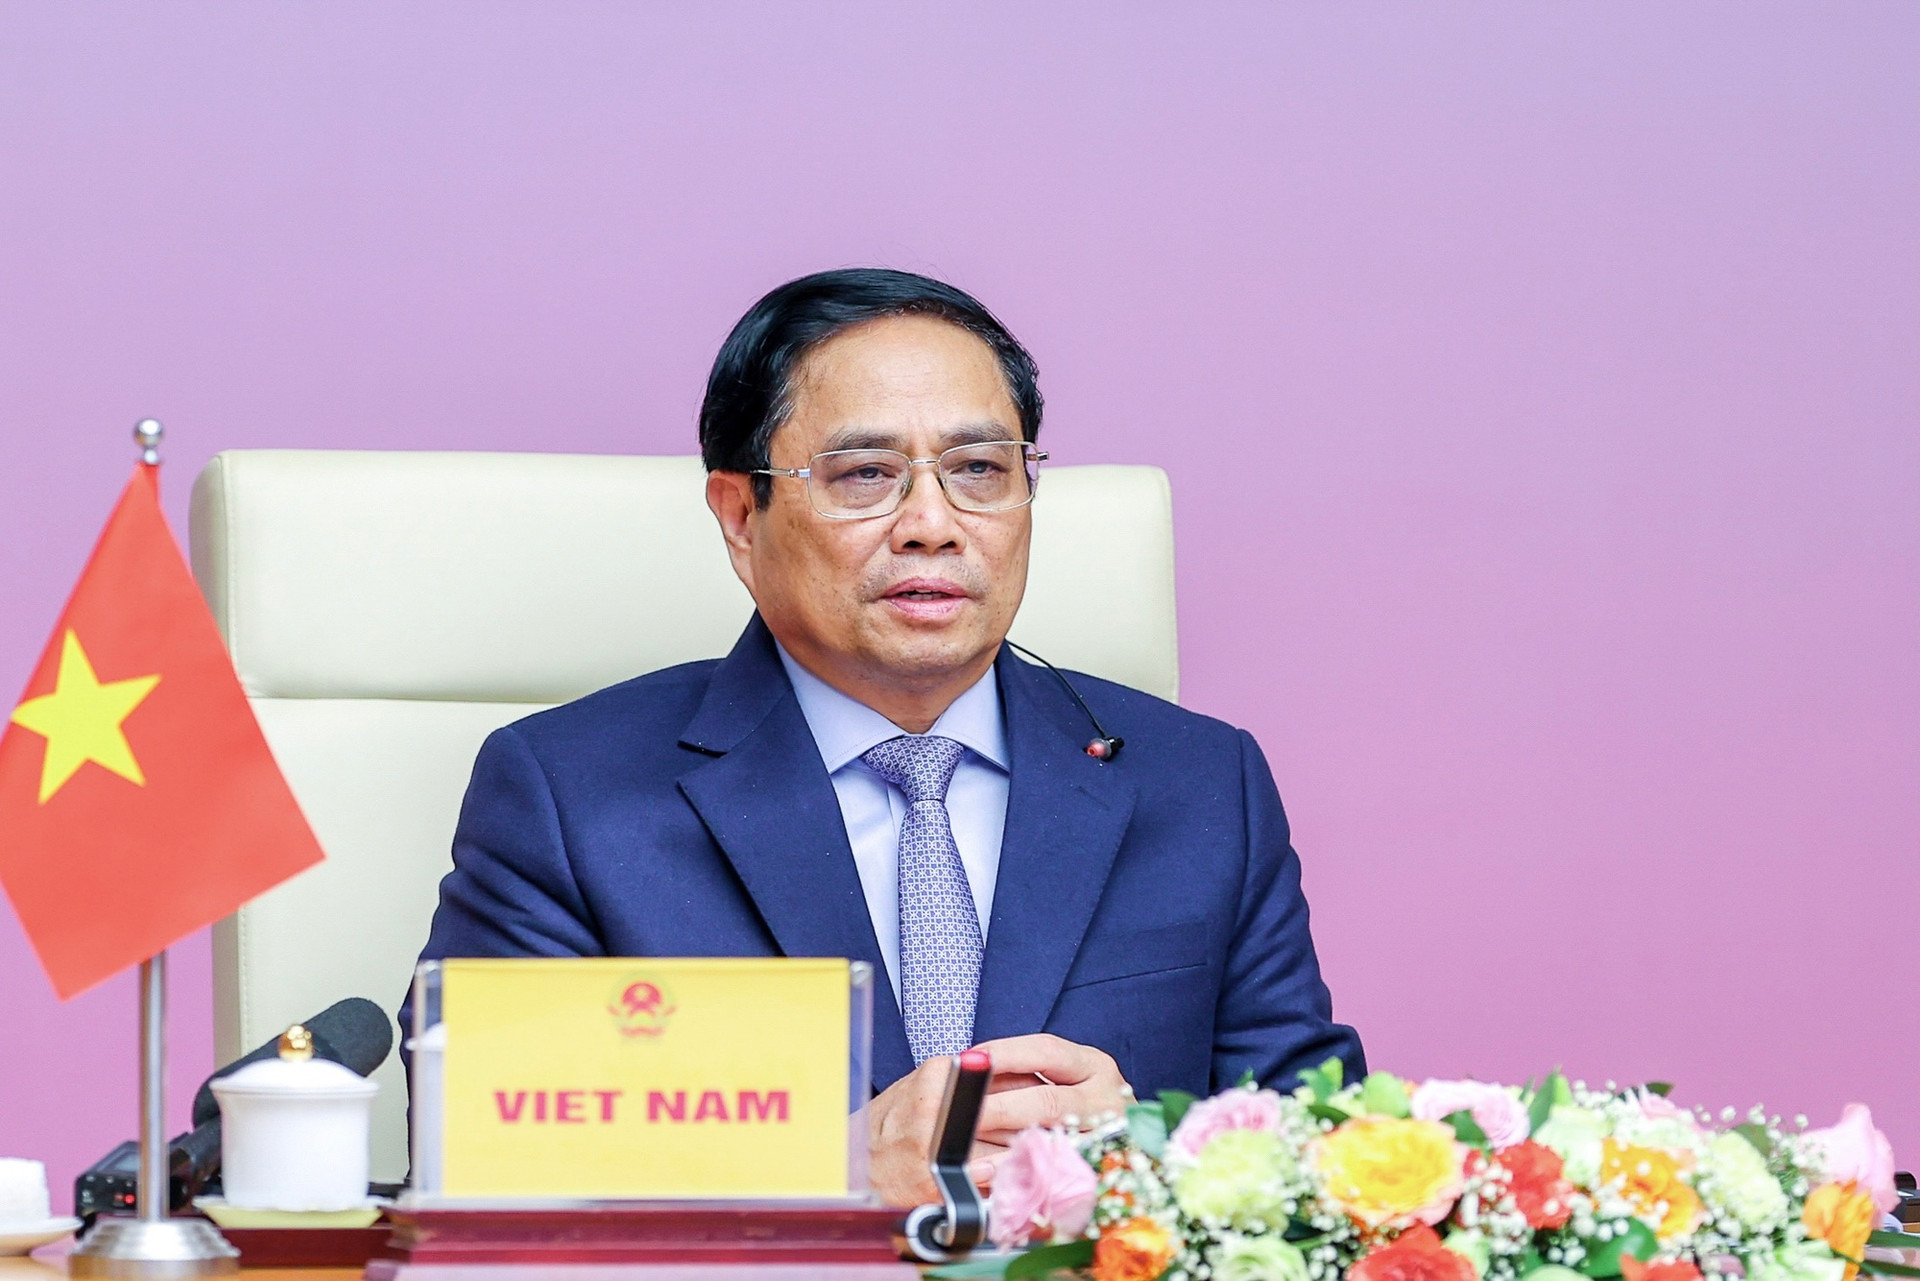 Tiềm năng kinh tế Việt Nam: Với tốc độ phát triển kinh tế đáng kể, Việt Nam đang trở thành một trong những nền kinh tế tiềm năng nhất trong khu vực. Hình ảnh về sự đột phá và khả năng phát triển của đất nước Việt Nam sẽ khiến bạn cảm thấy phấn khích và tin tưởng vào tiềm năng kinh tế tài chính của Việt Nam.